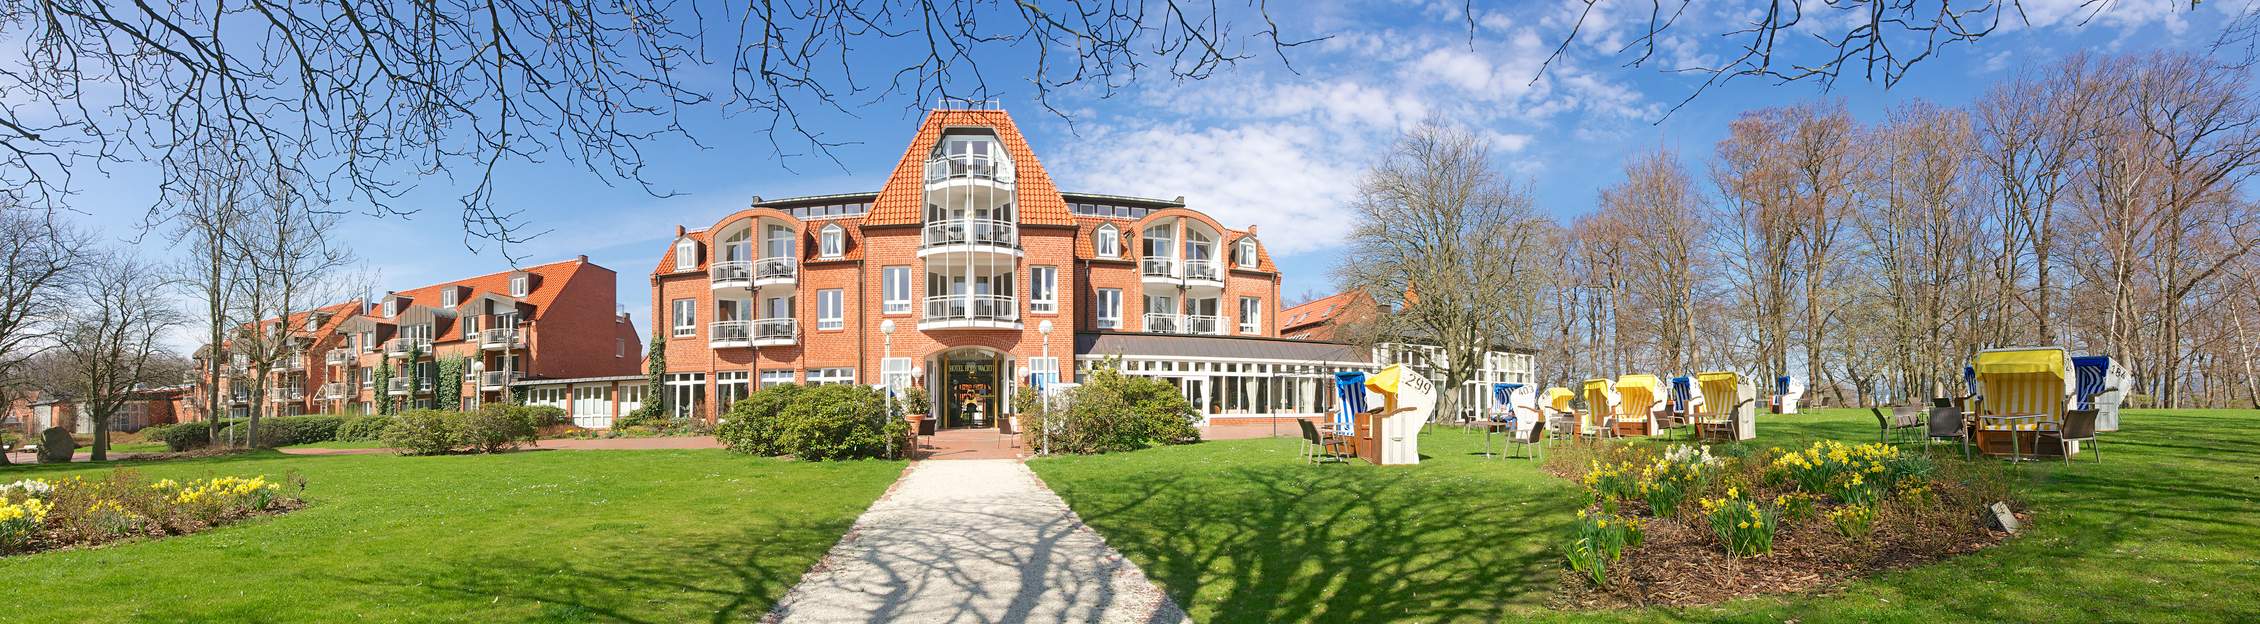 Hotel Hohe Wacht an der Ostsee in Schleswig-Holstein